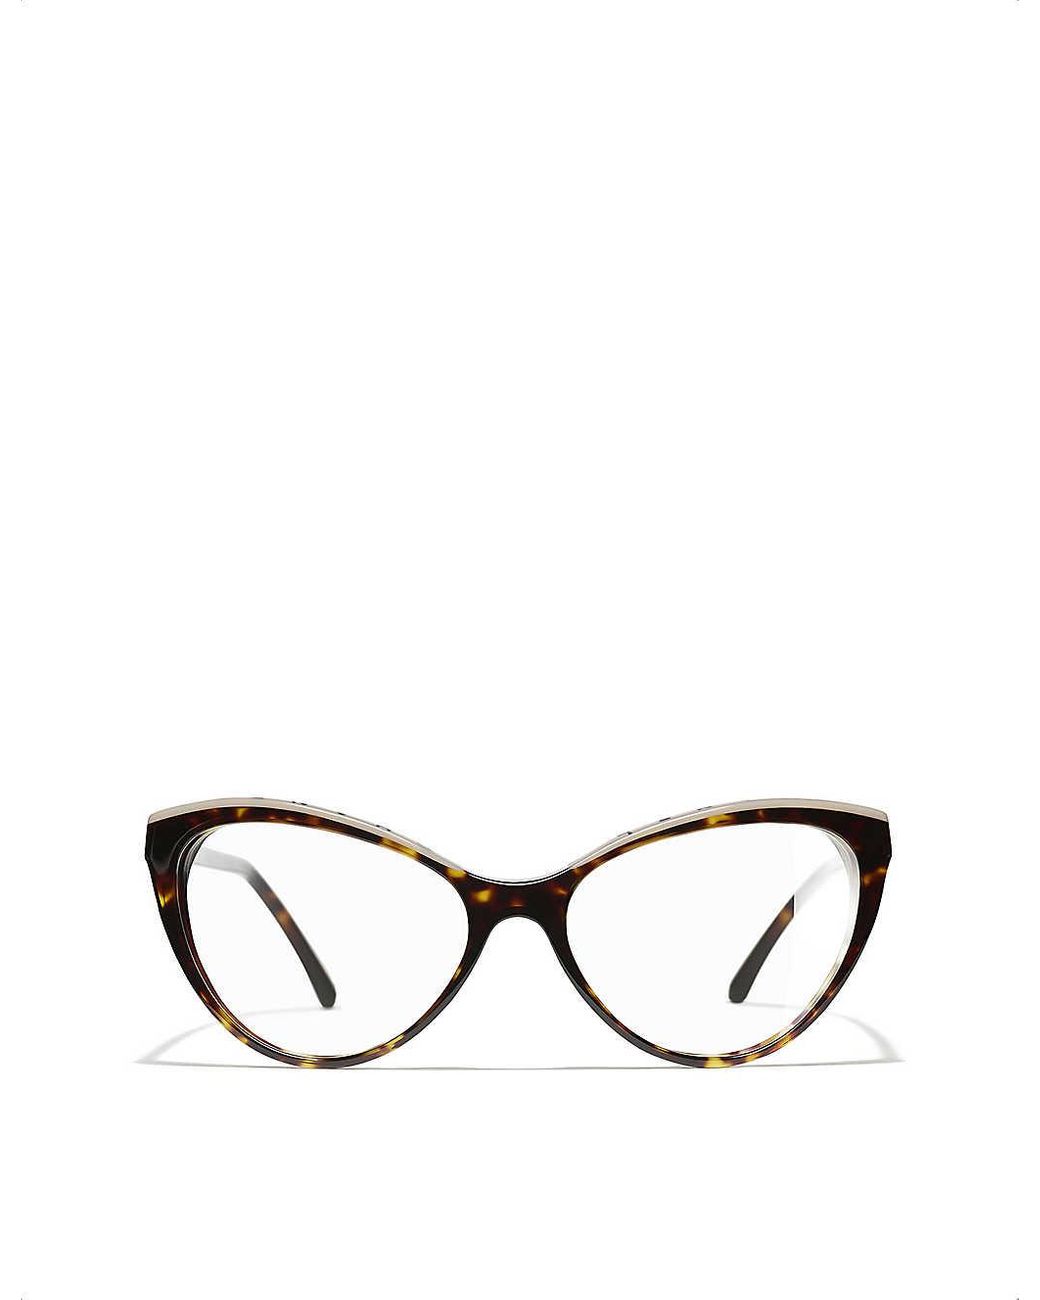 Chanel Cat Eye Eyeglasses in Lyst